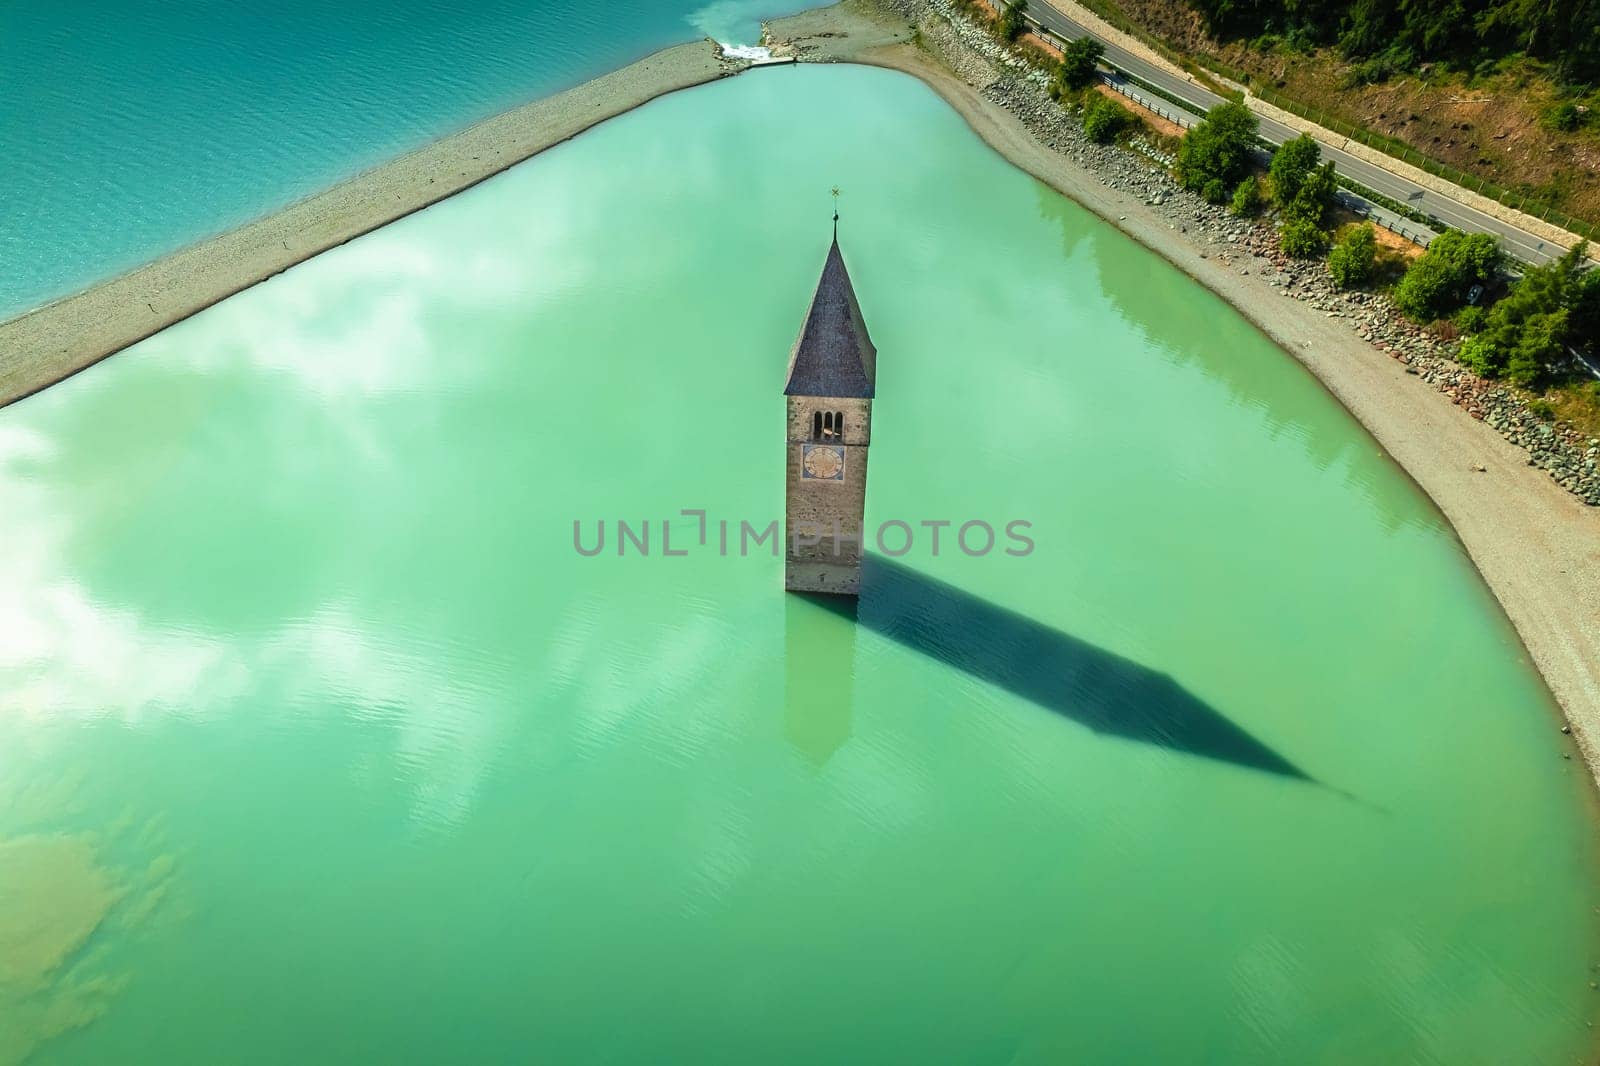 Curon Venosta. Submerged bell Tower in Graun im Vinschgau on Lake Reschen Alpine landscape aerial view, South Tyrol region Italy